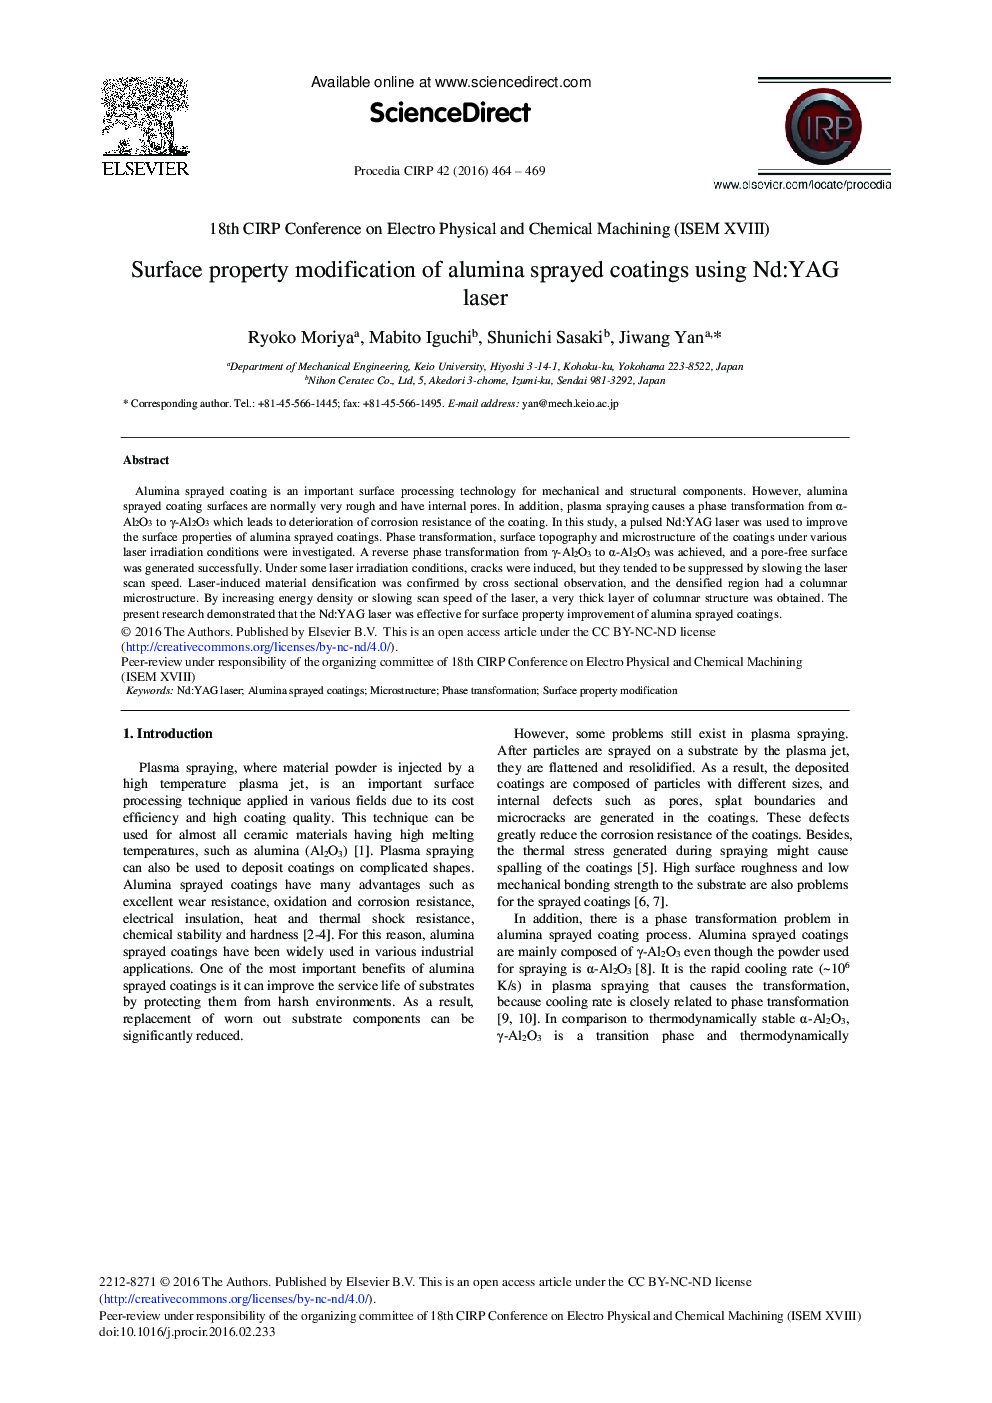 Surface Property Modification of Alumina Sprayed Coatings Using Nd:YAG Laser 